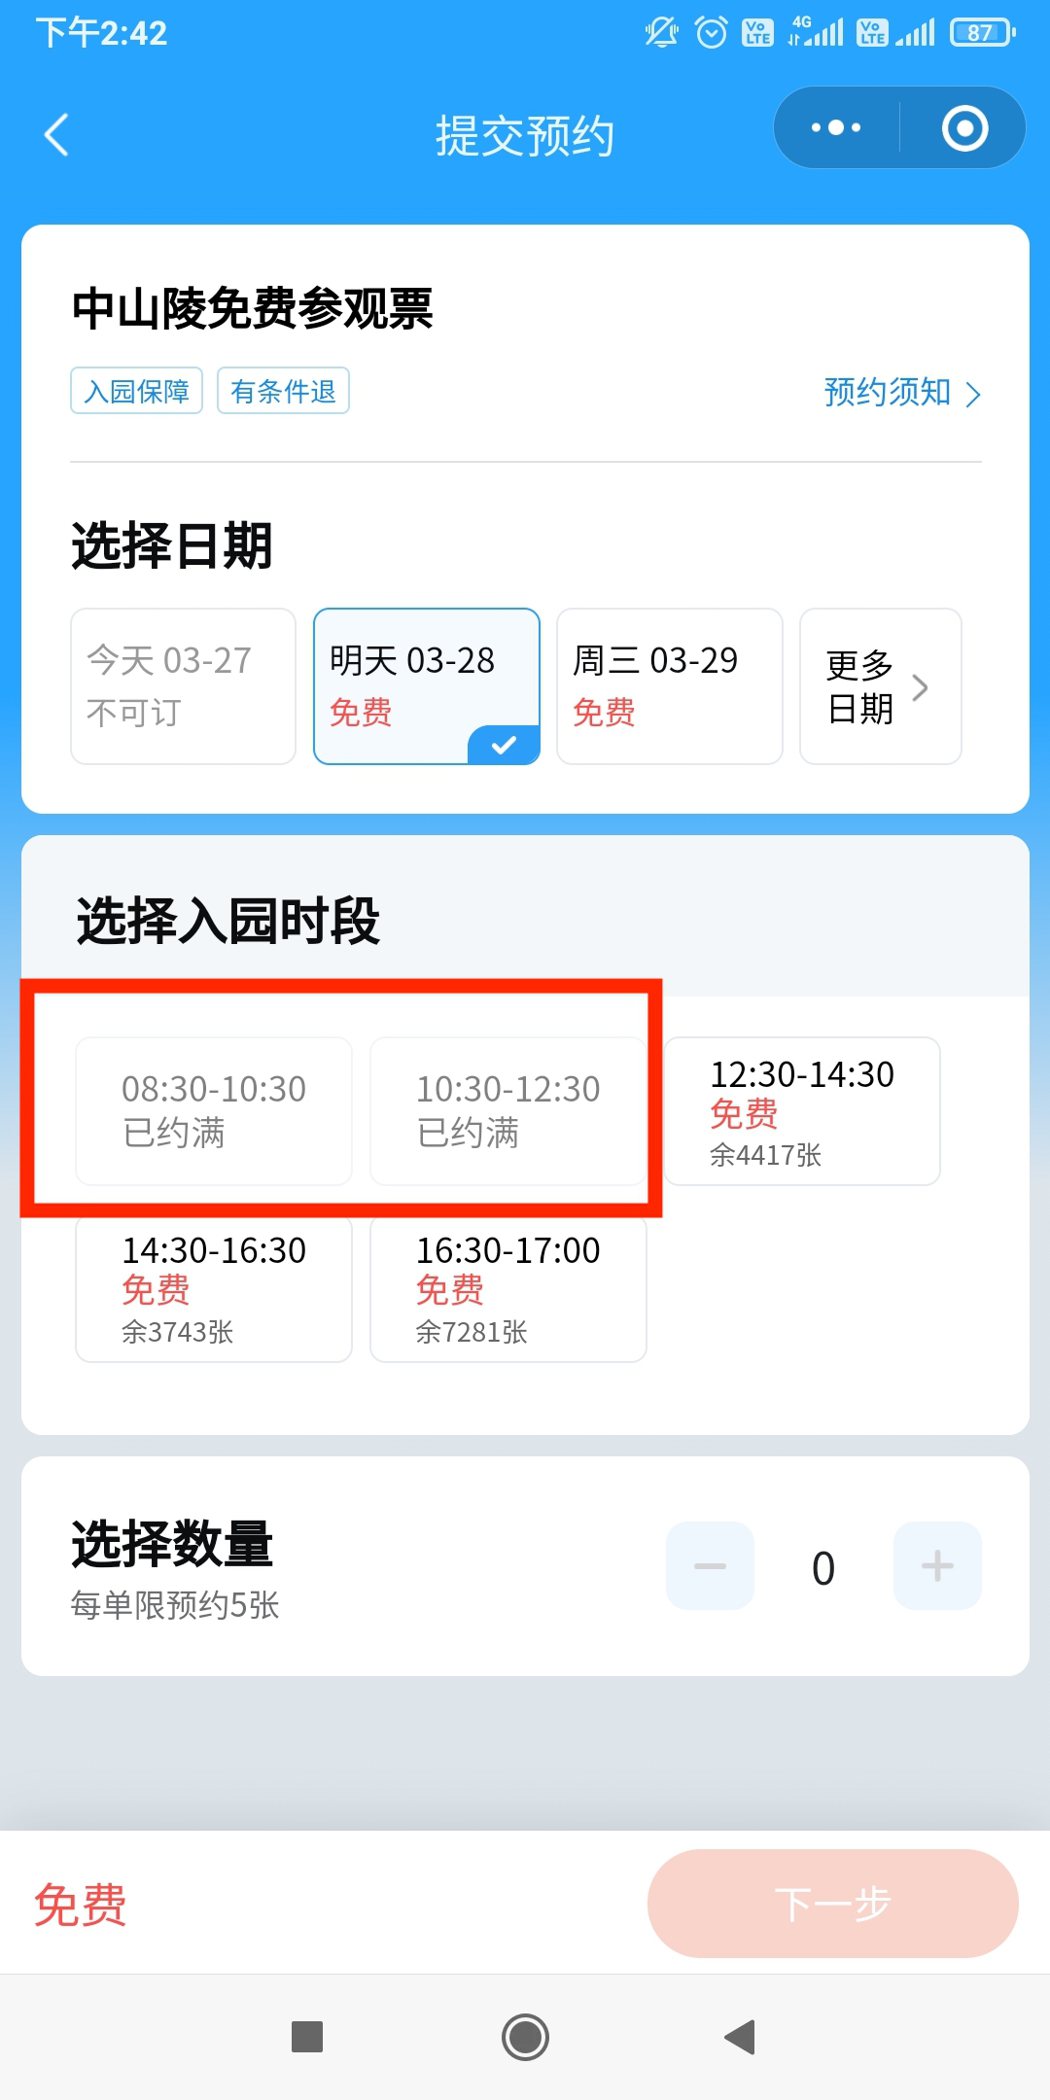 南京中山陵在28日上午也顯示沒有餘票的狀態。圖截取自中山陵預約程式